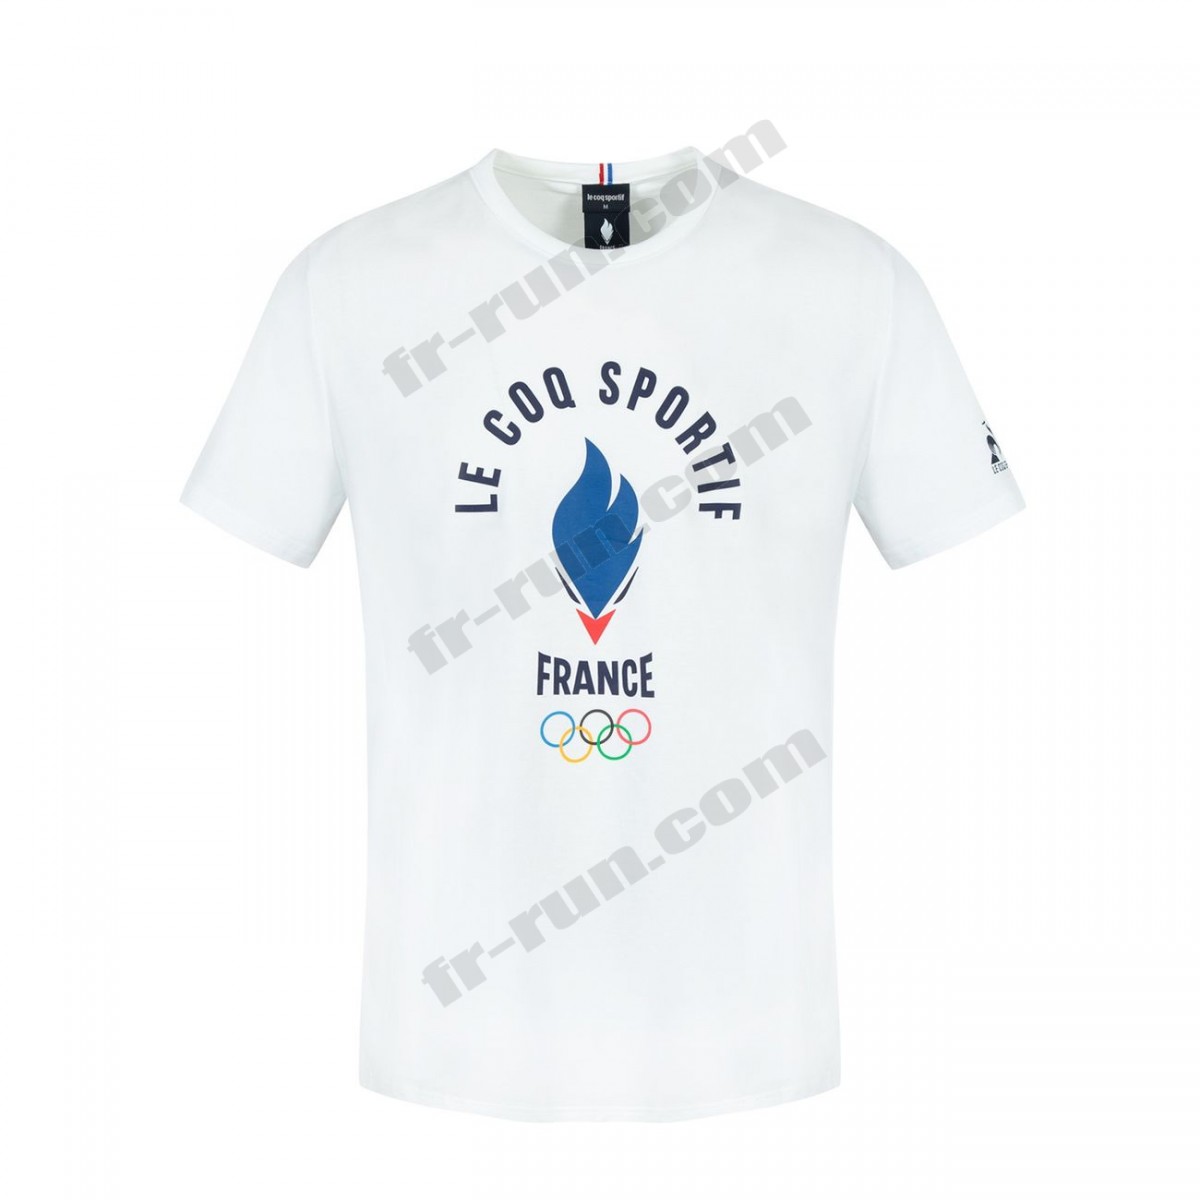 Le Coq Sportif/running adulte LE COQ SPORTIF T-shirt manches longues Équipe de France Olympique Unisexe √ Nouveau style √ Soldes - -0